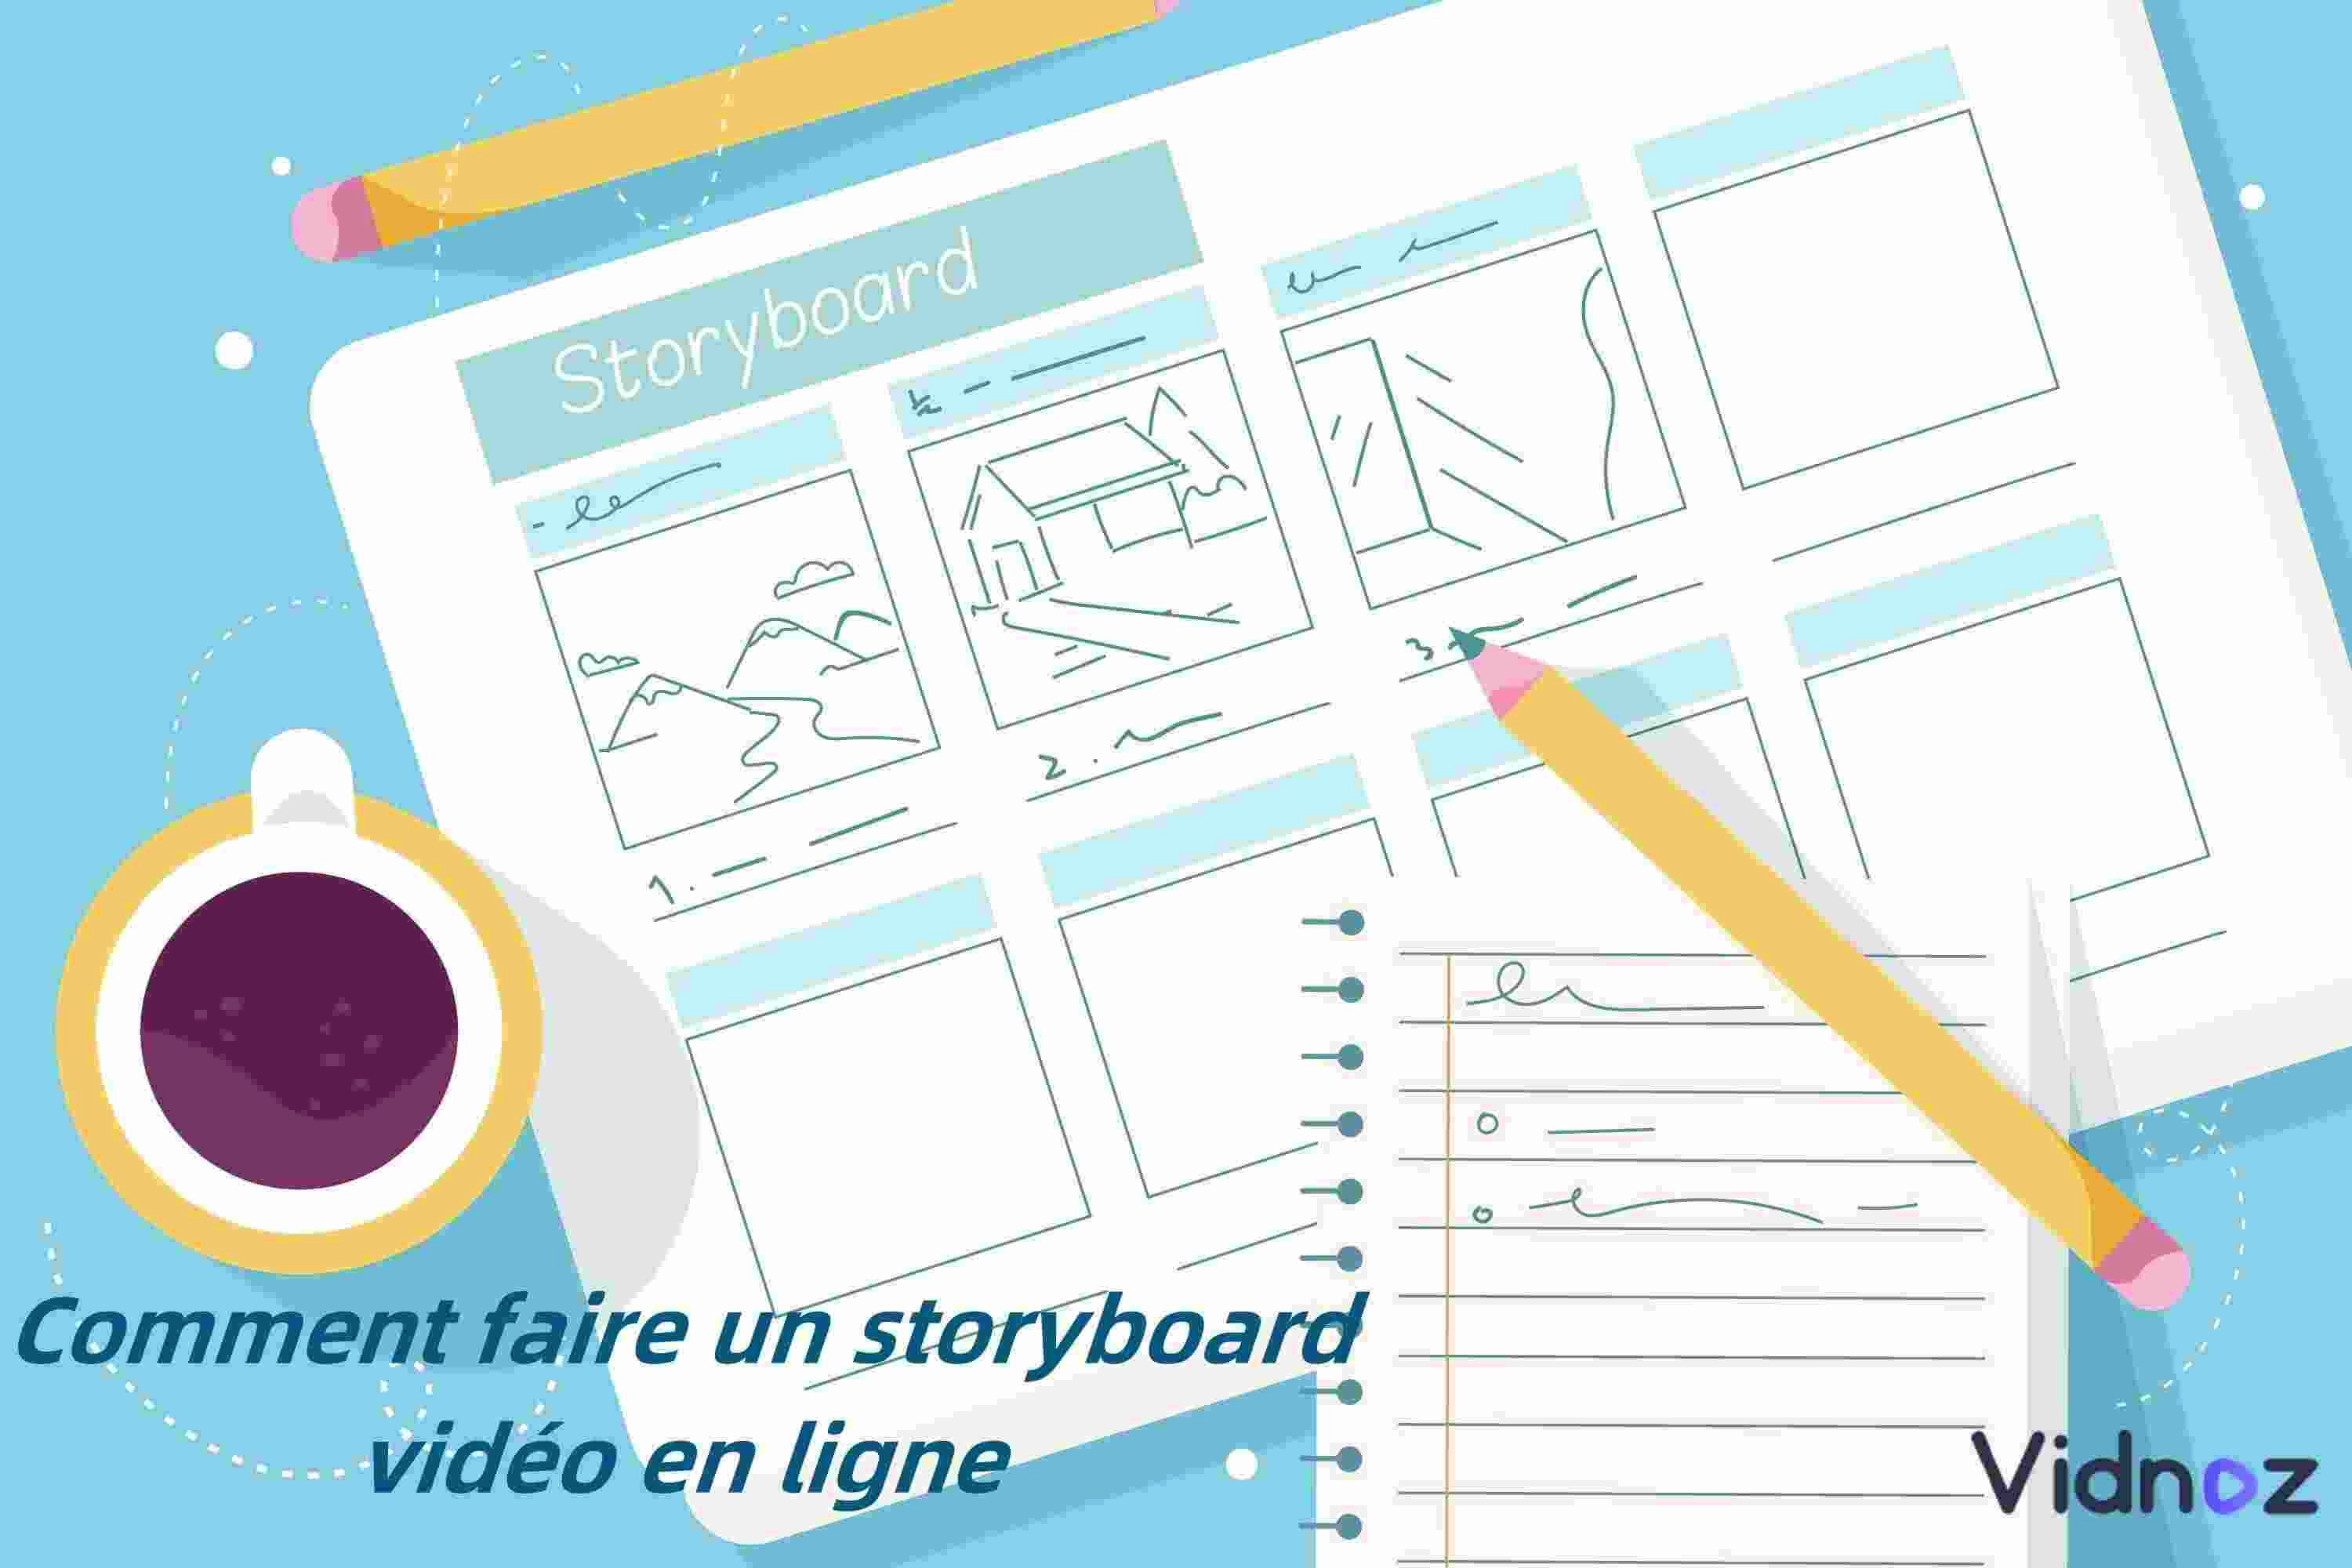 Comment faire un storyboard vidéo en ligne à l'aide de modèles numériques ?